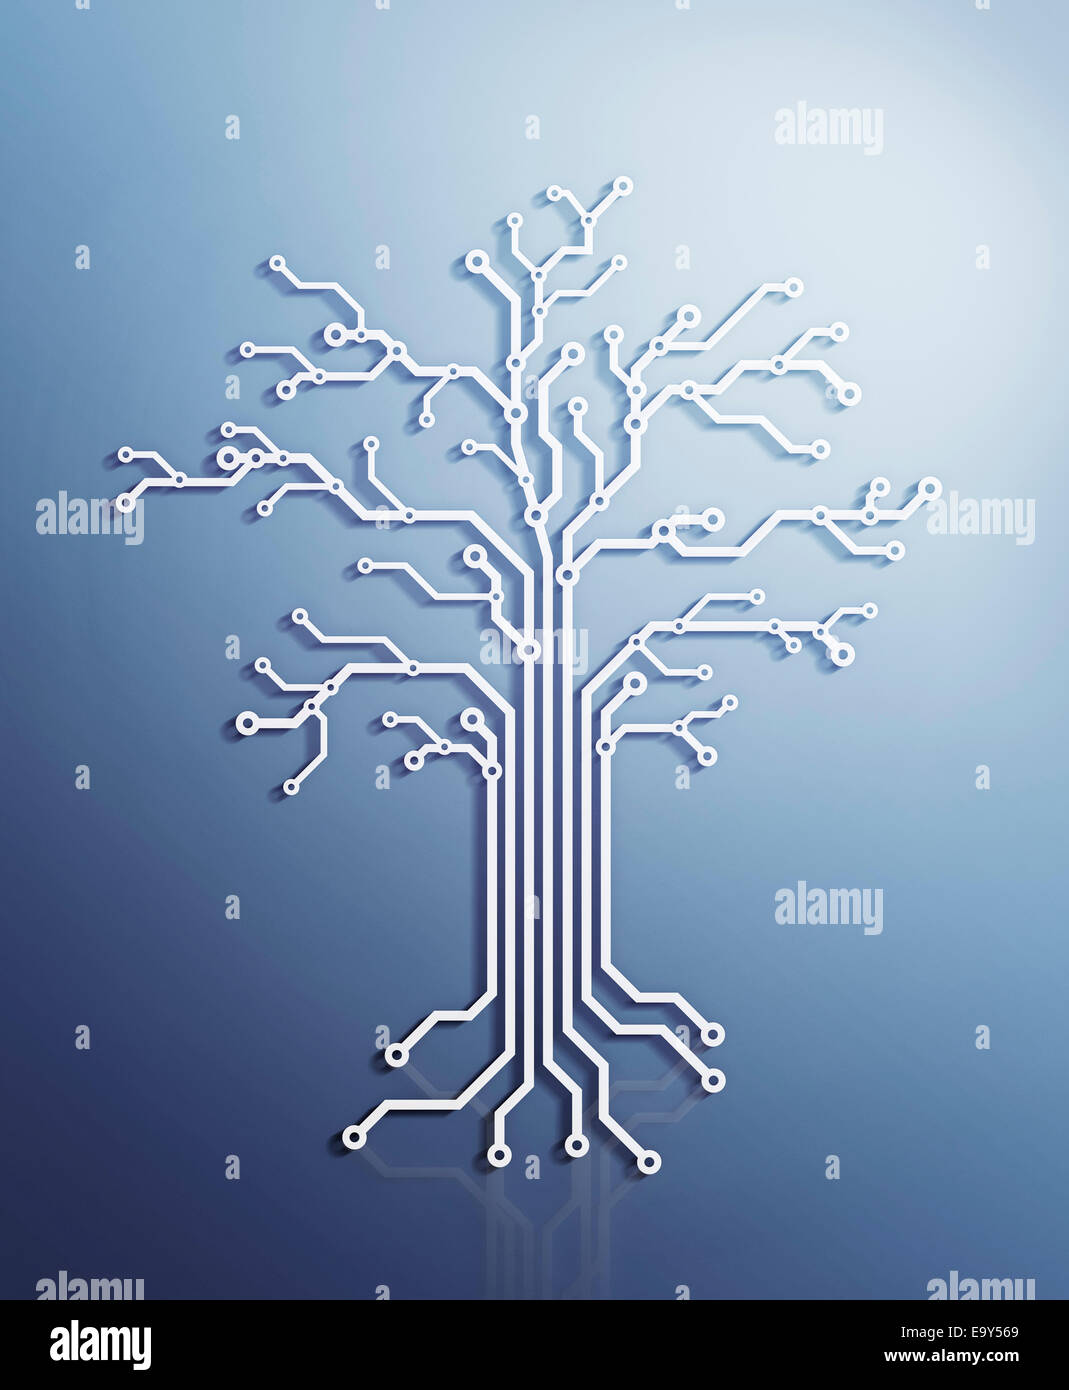 Digitalen Baum gemacht von elektronischen Schaltungen, konzeptionelle Darstellung auf blauem Hintergrund Stockfoto